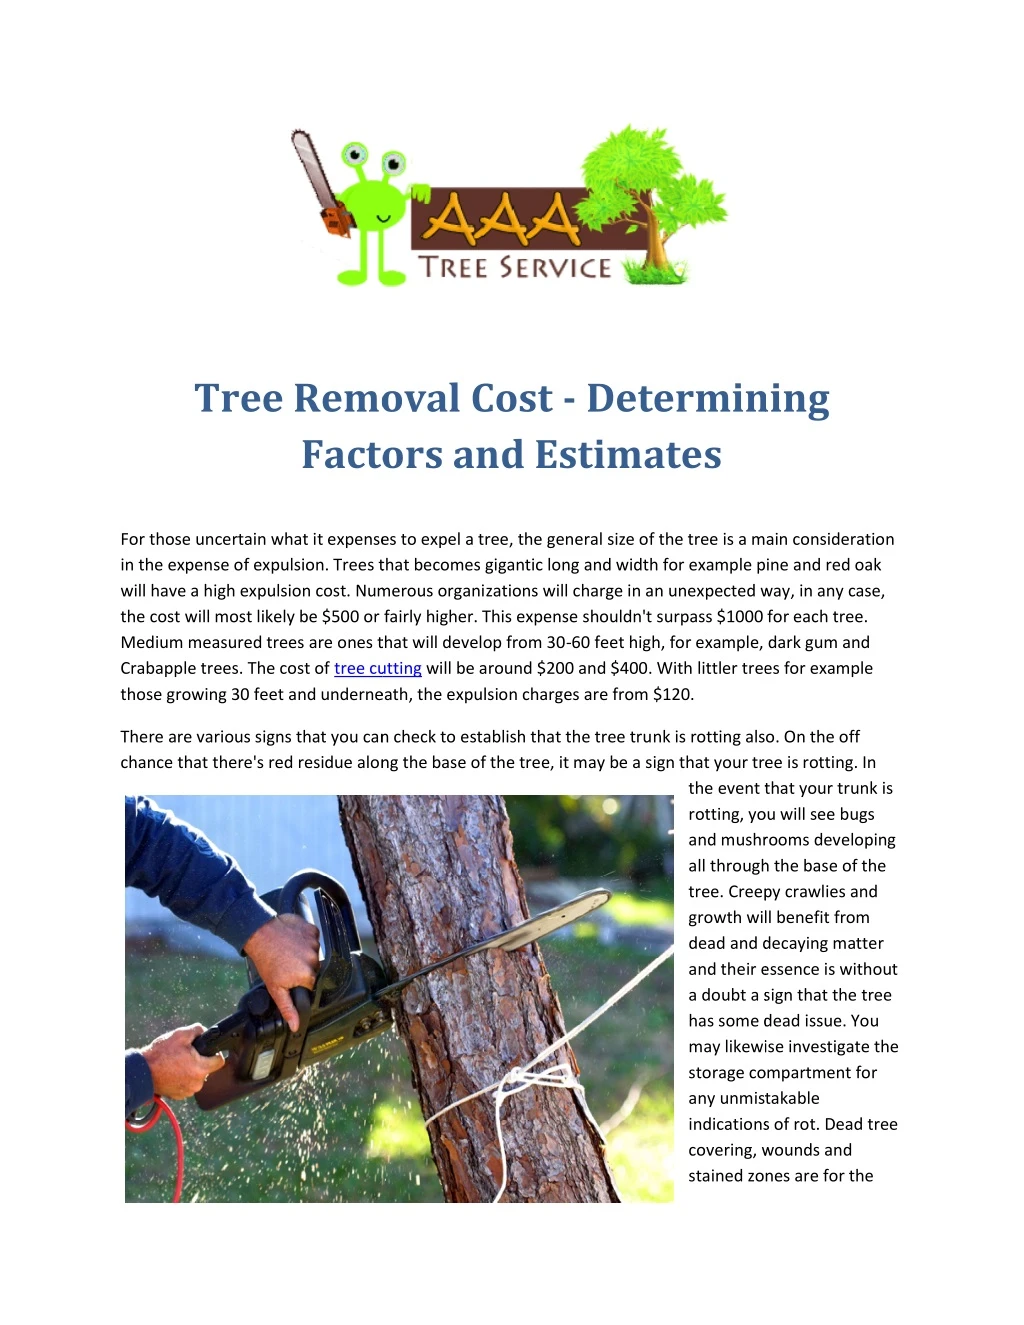 tree removal cost factors and estimates factors